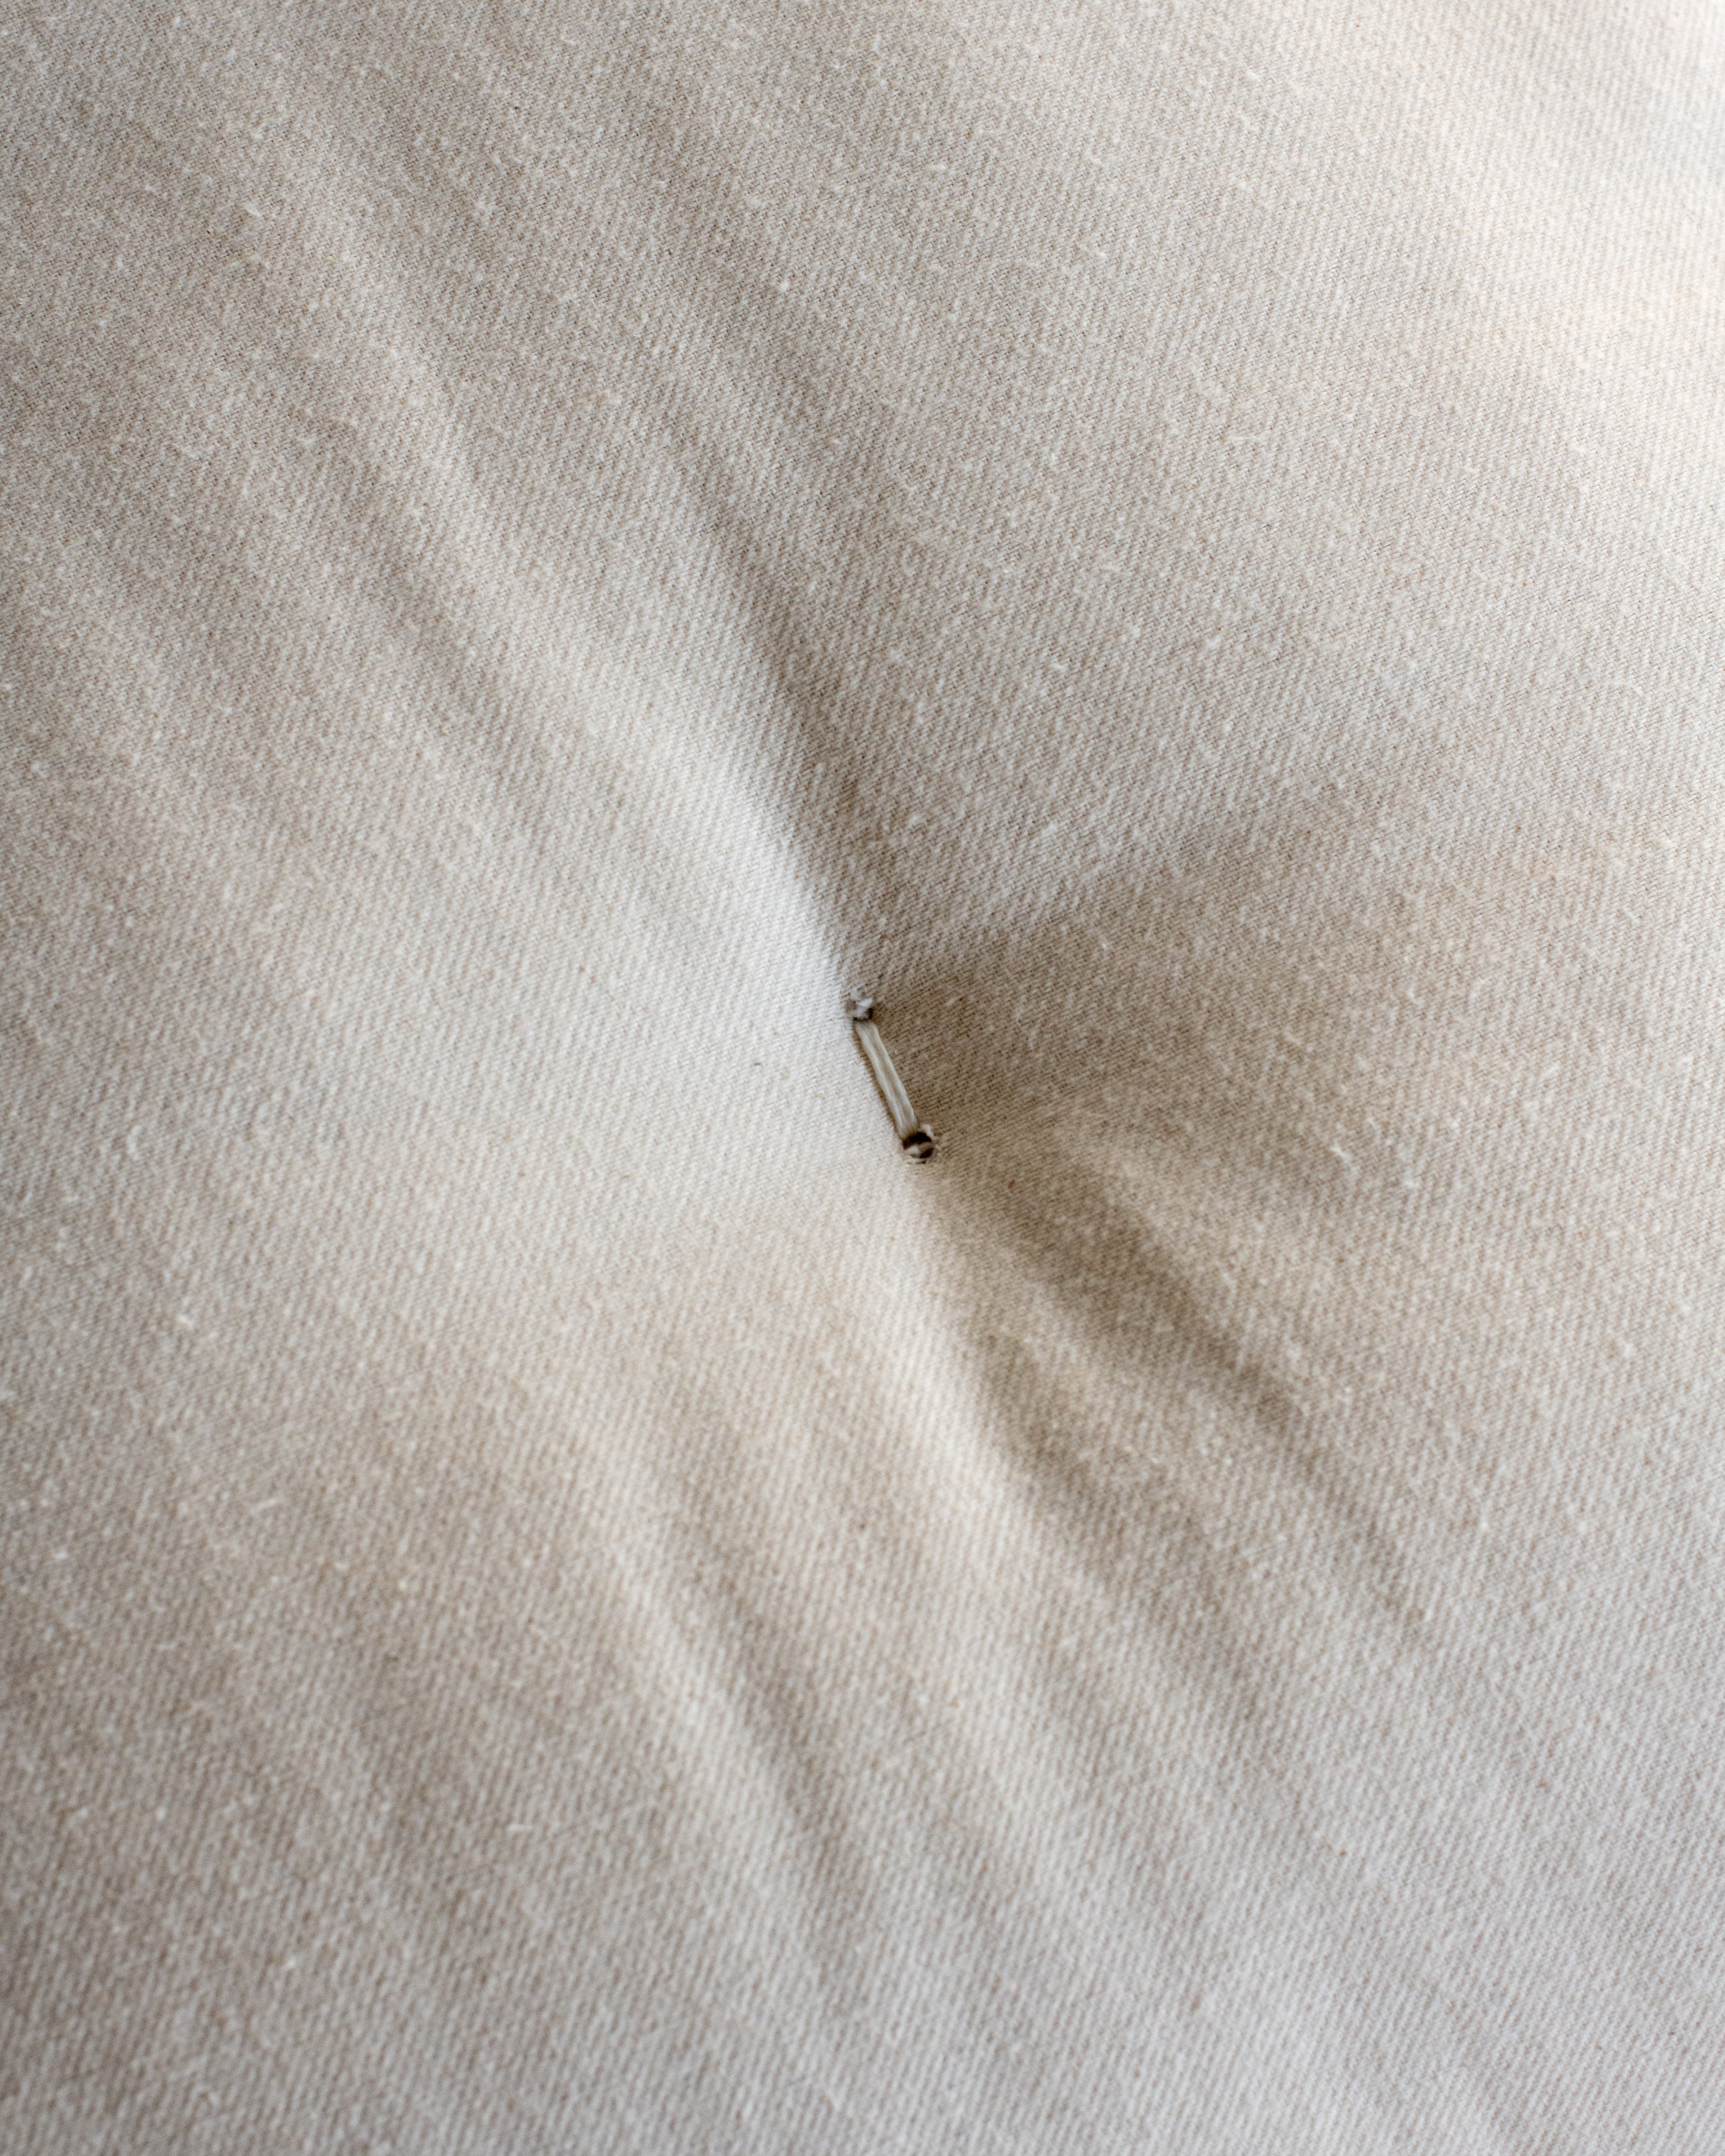 Organic Wool / Cotton Shikibuton Mattress by TFS Honest Sleep